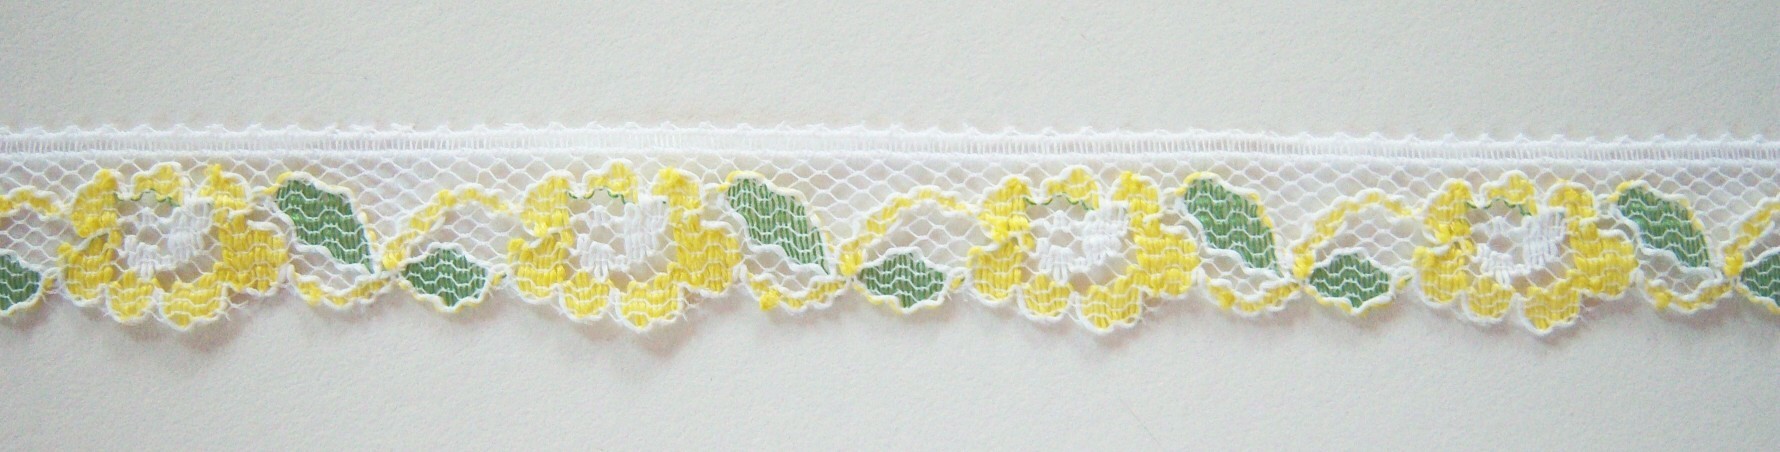 White/Yellow 1/2" Nylon Lace